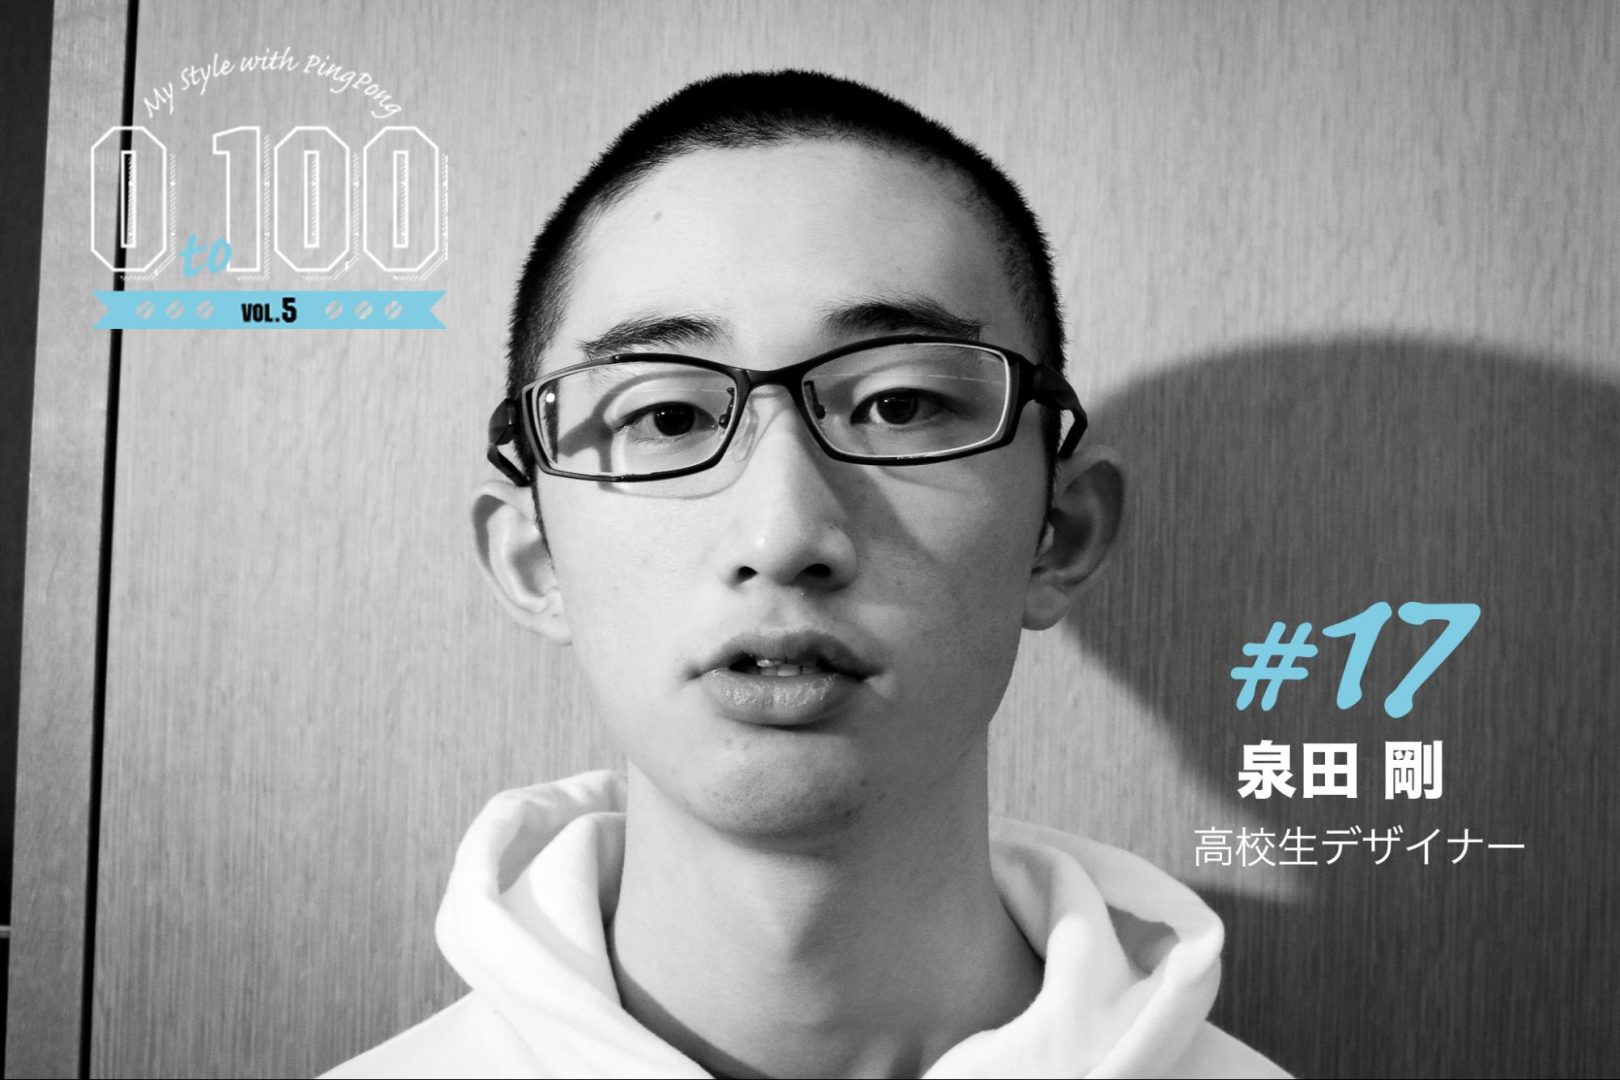 過去にも未来にもいない、今の自分を知る企画 「0 to 100」   高校生デザイナー 泉田 剛 17歳